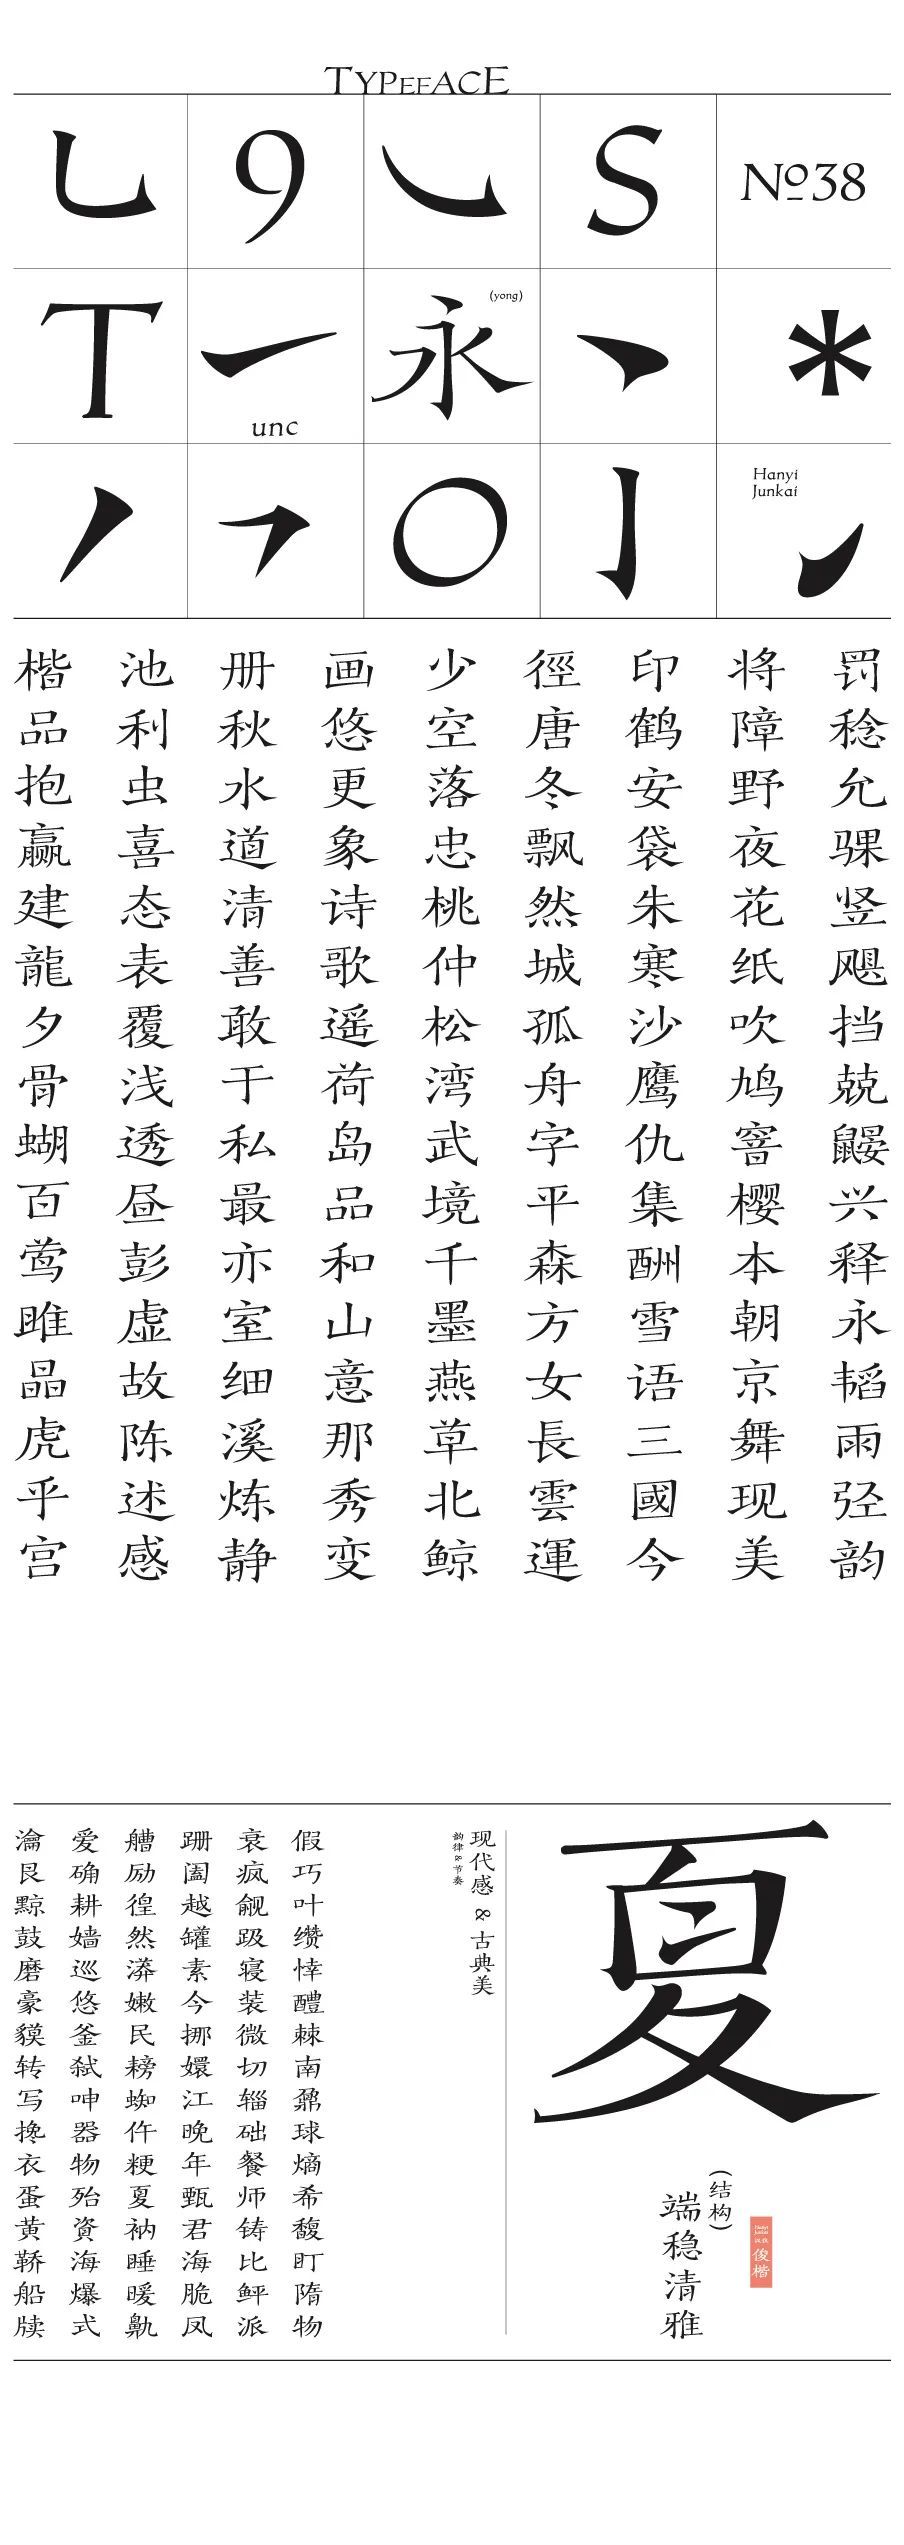 汉仪俊楷是一款清新闲适的创意楷书字体